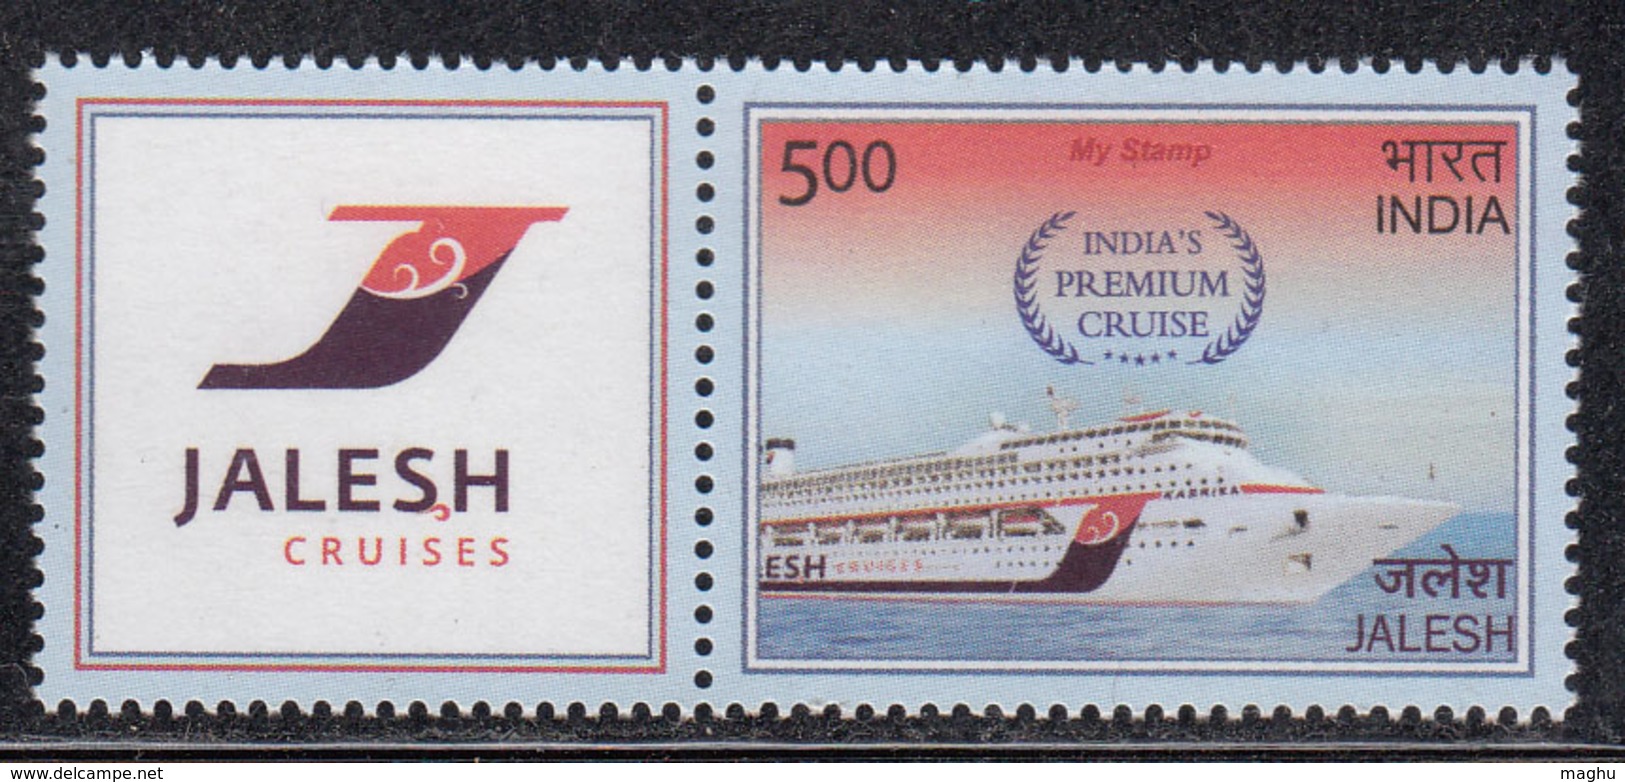 'Jalesh', India Premium Cruise, My Stamp India 2019  Ship,Transport, - Unused Stamps